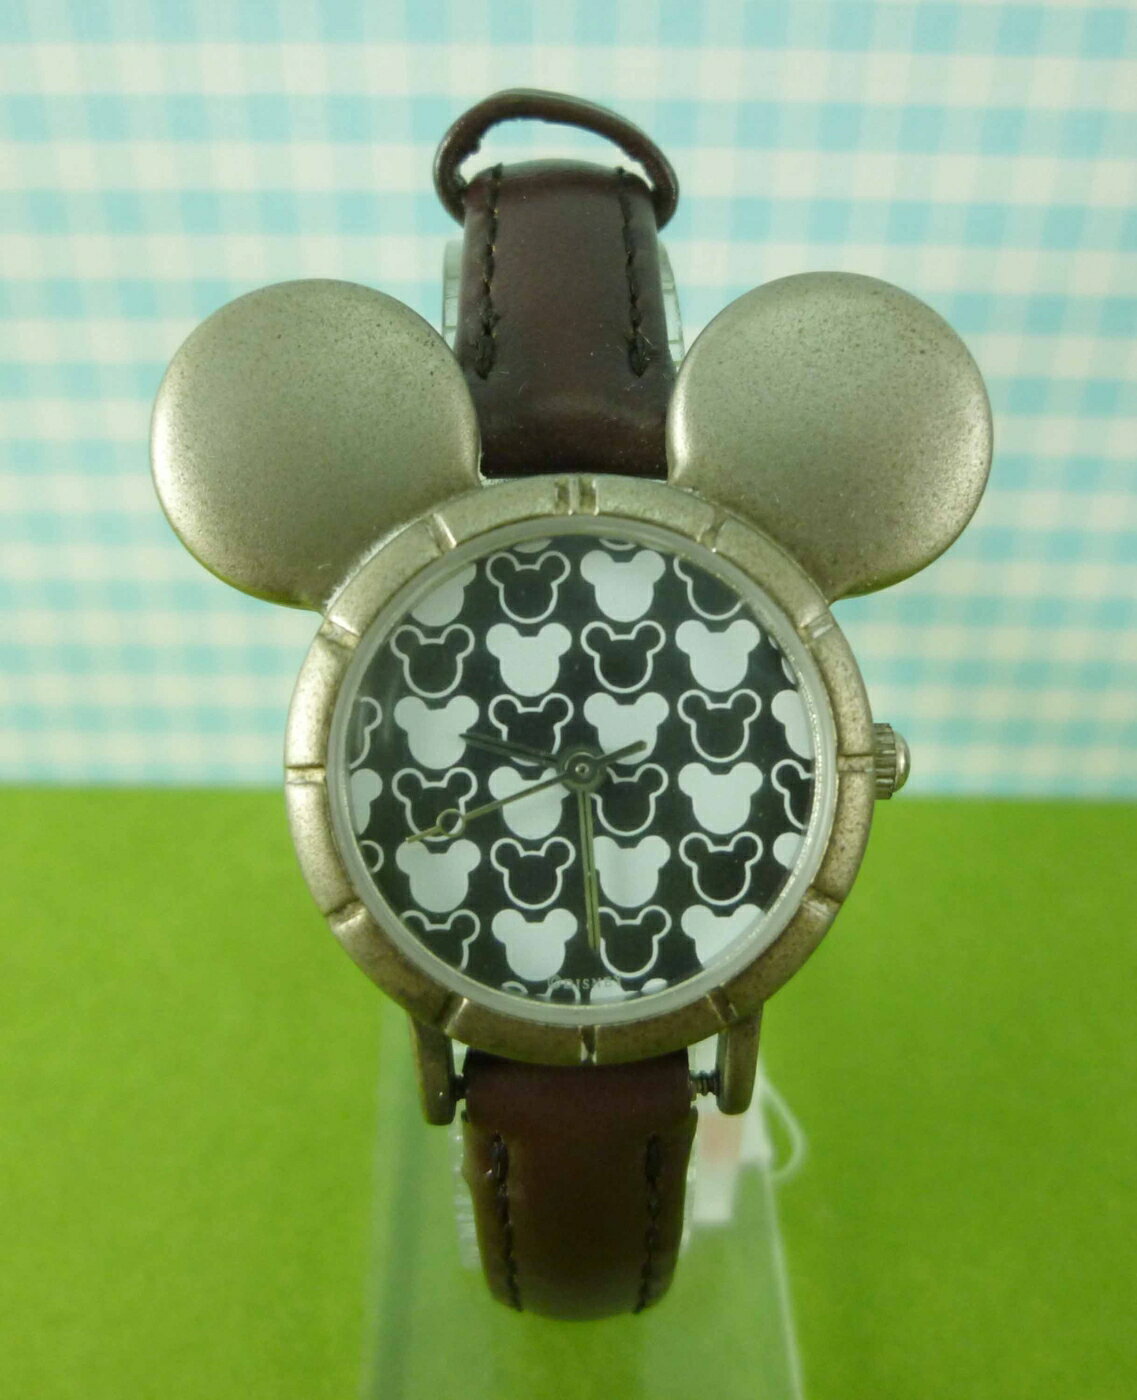 【震撼精品百貨】米奇/米妮 Micky Mouse 造型手錶-米奇大頭滿版圖案-黑色 震撼日式精品百貨